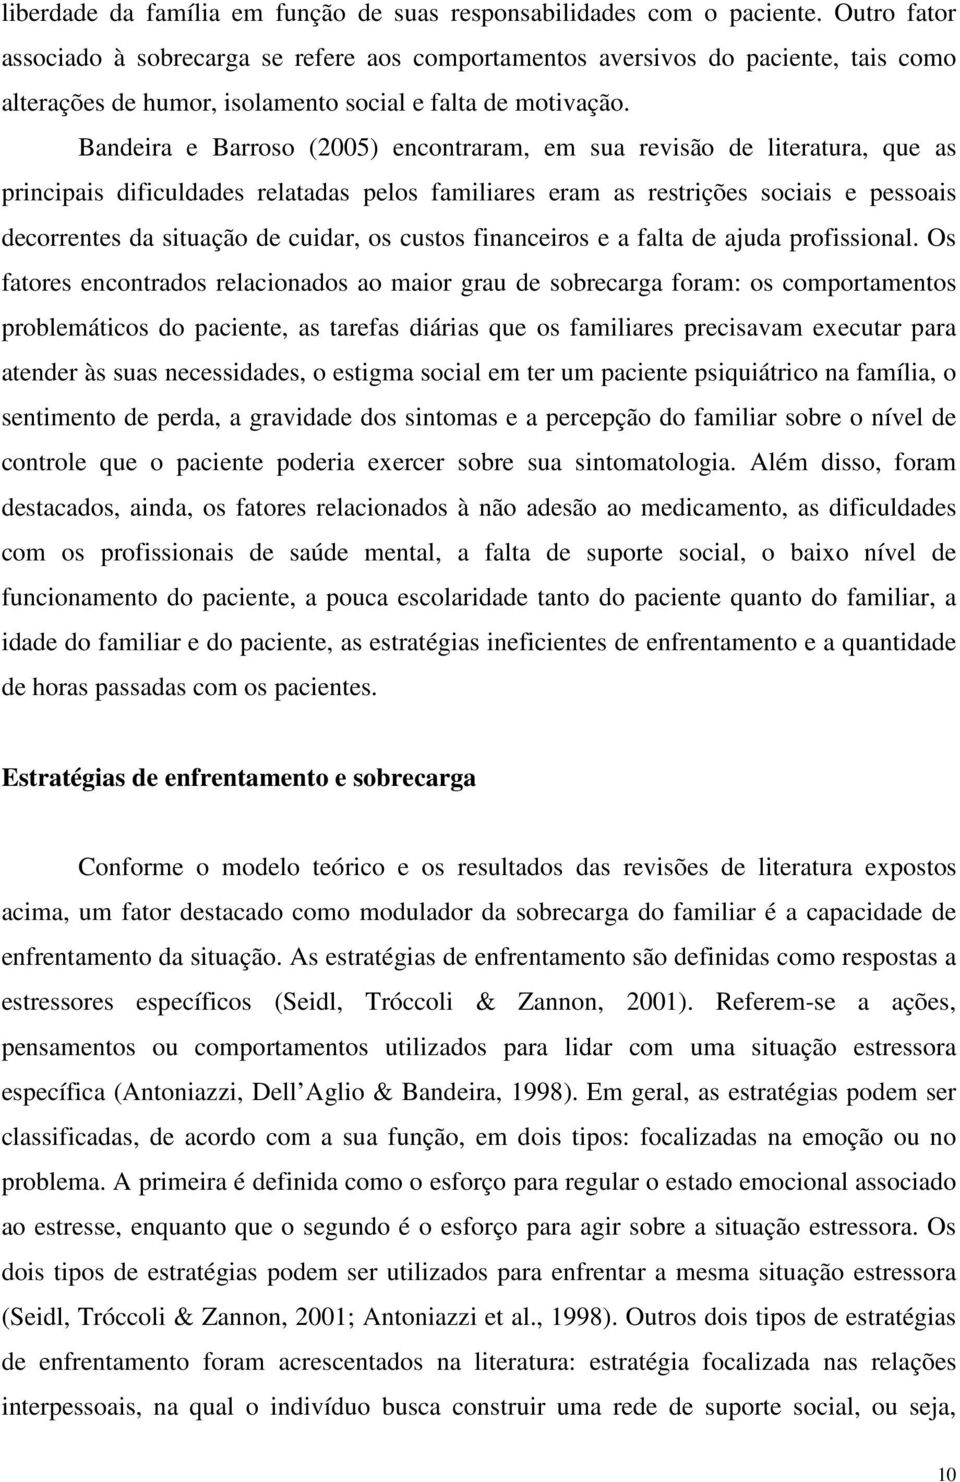 Bandeira e Barroso (2005) encontraram, em sua revisão de literatura, que as principais dificuldades relatadas pelos familiares eram as restrições sociais e pessoais decorrentes da situação de cuidar,